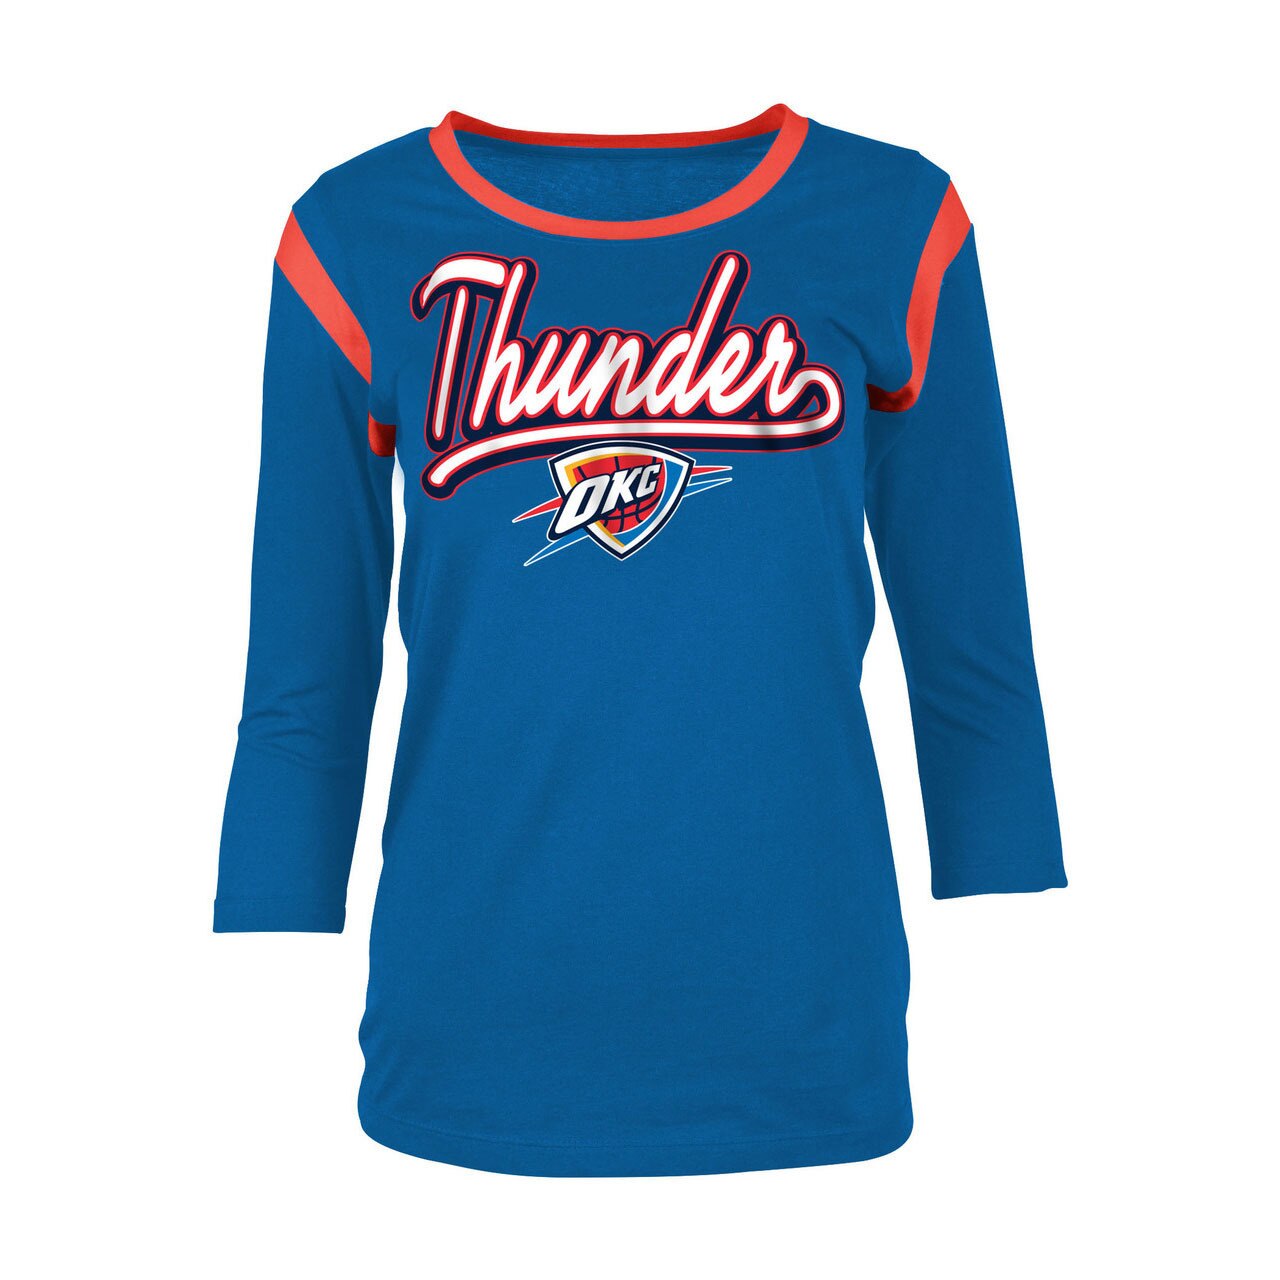 oklahoma city thunder women's jersey